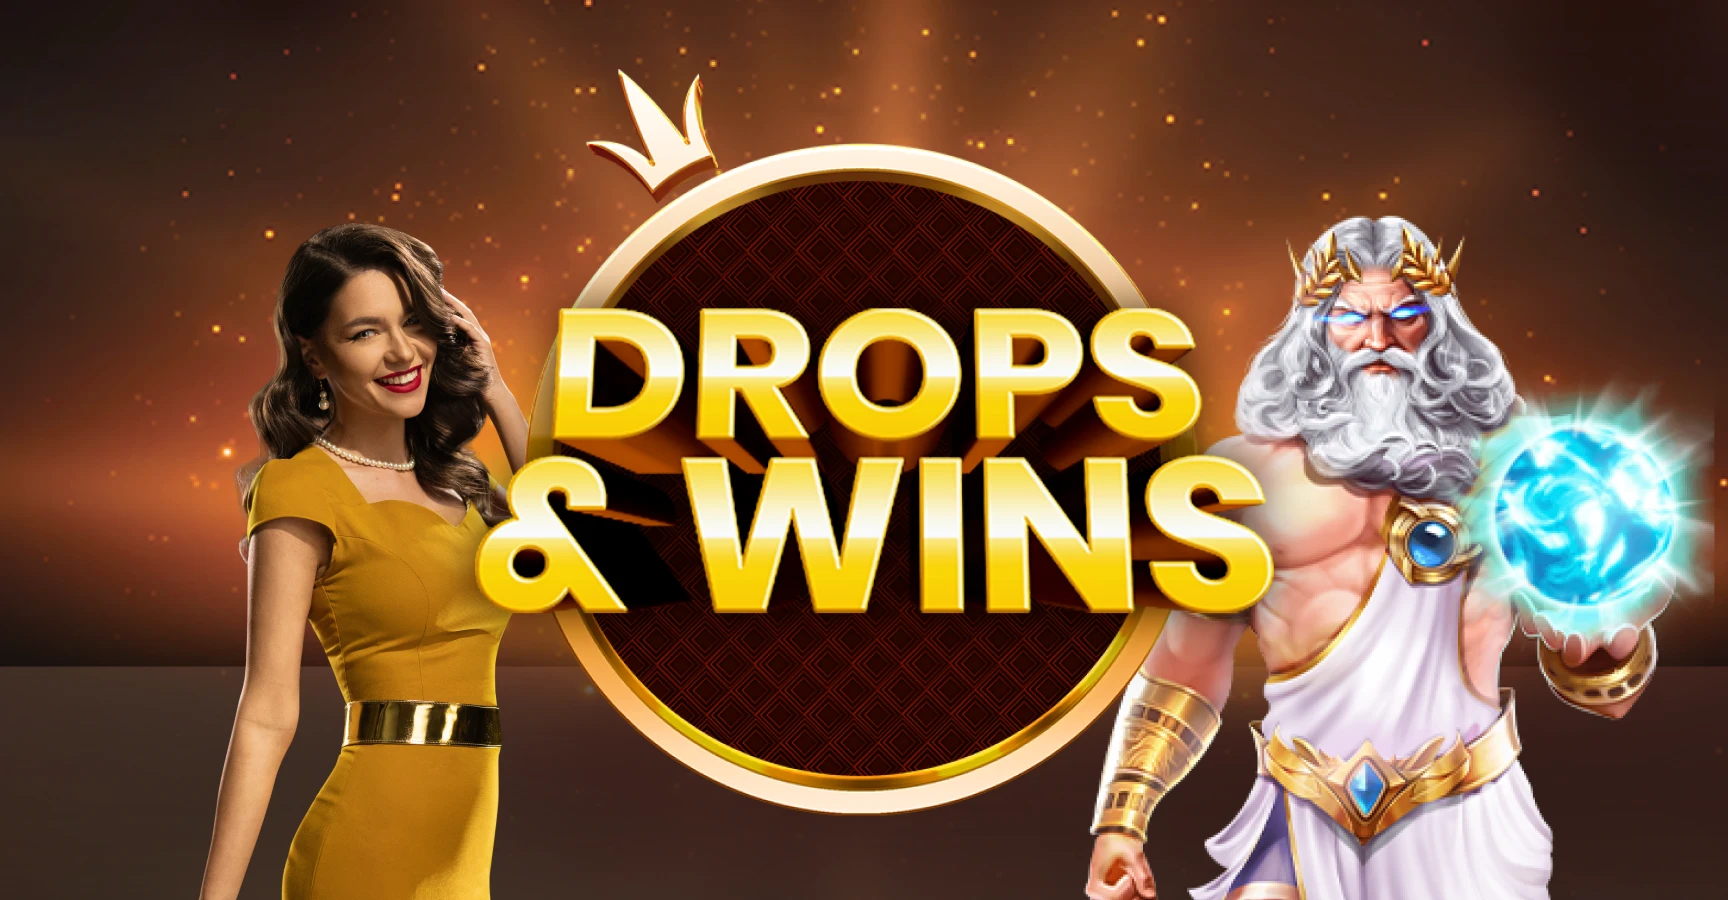 Drops & Wins Slots